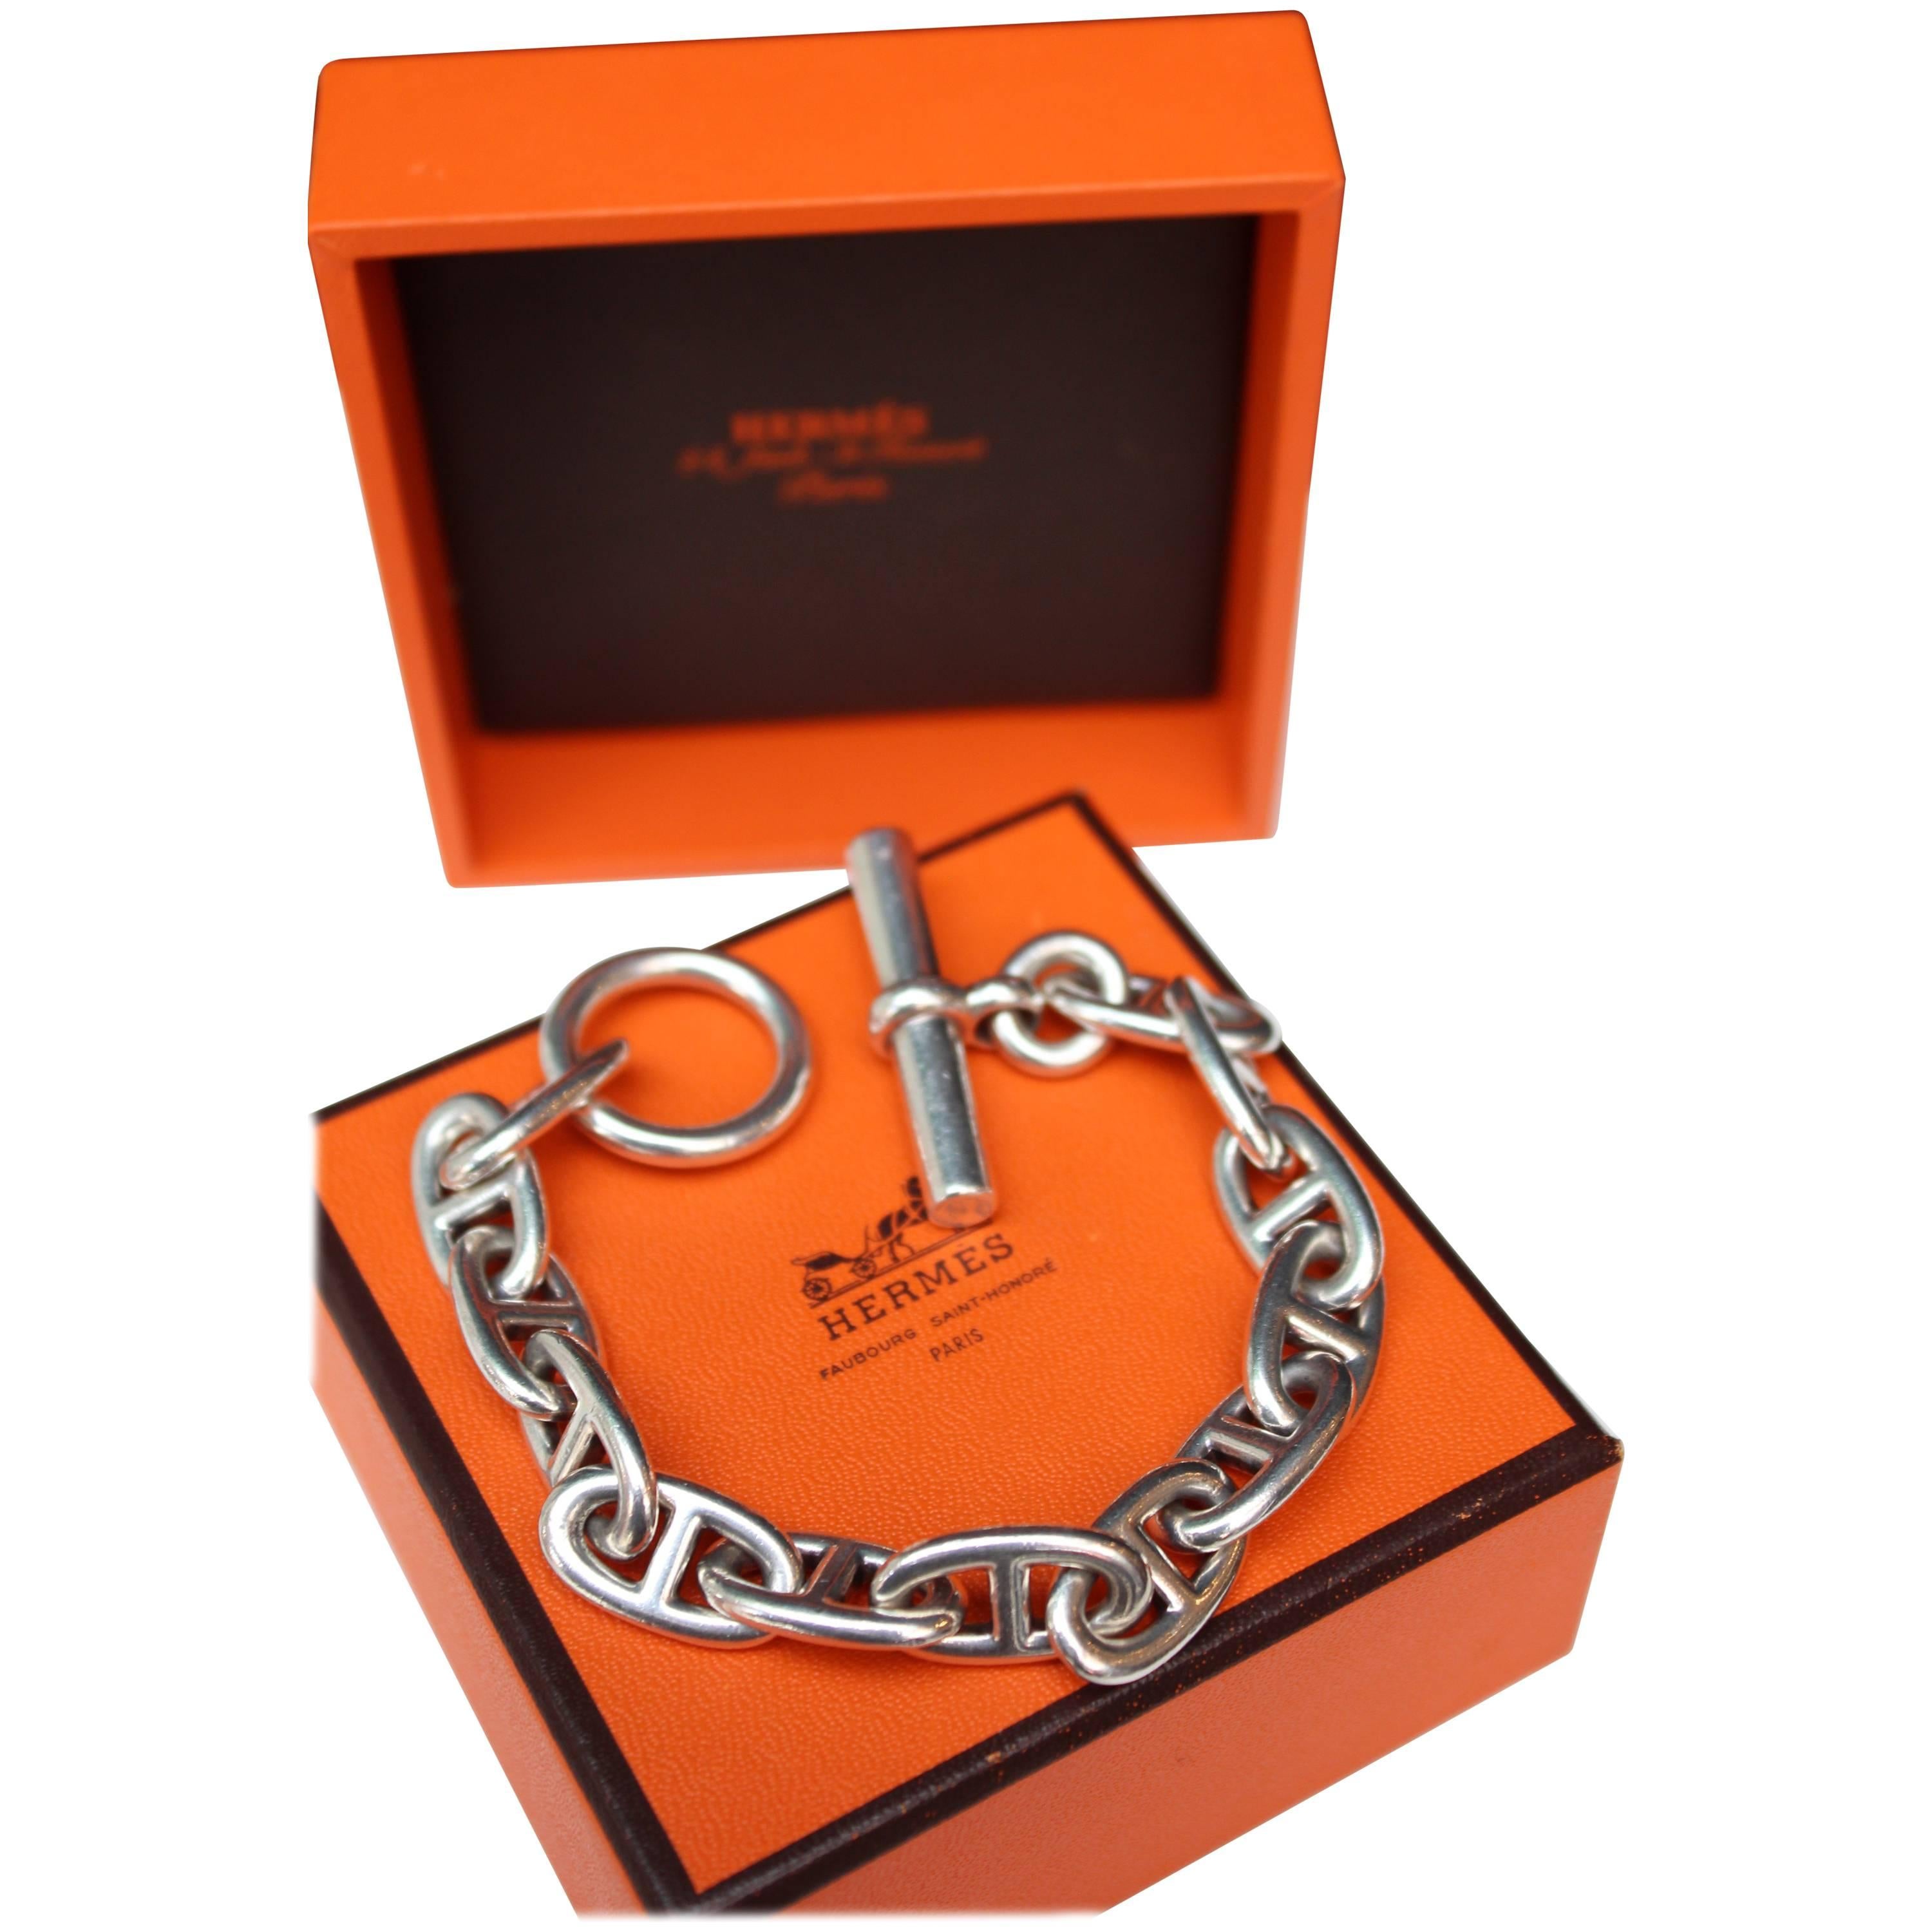 Hermès silver anchor chain bracelet